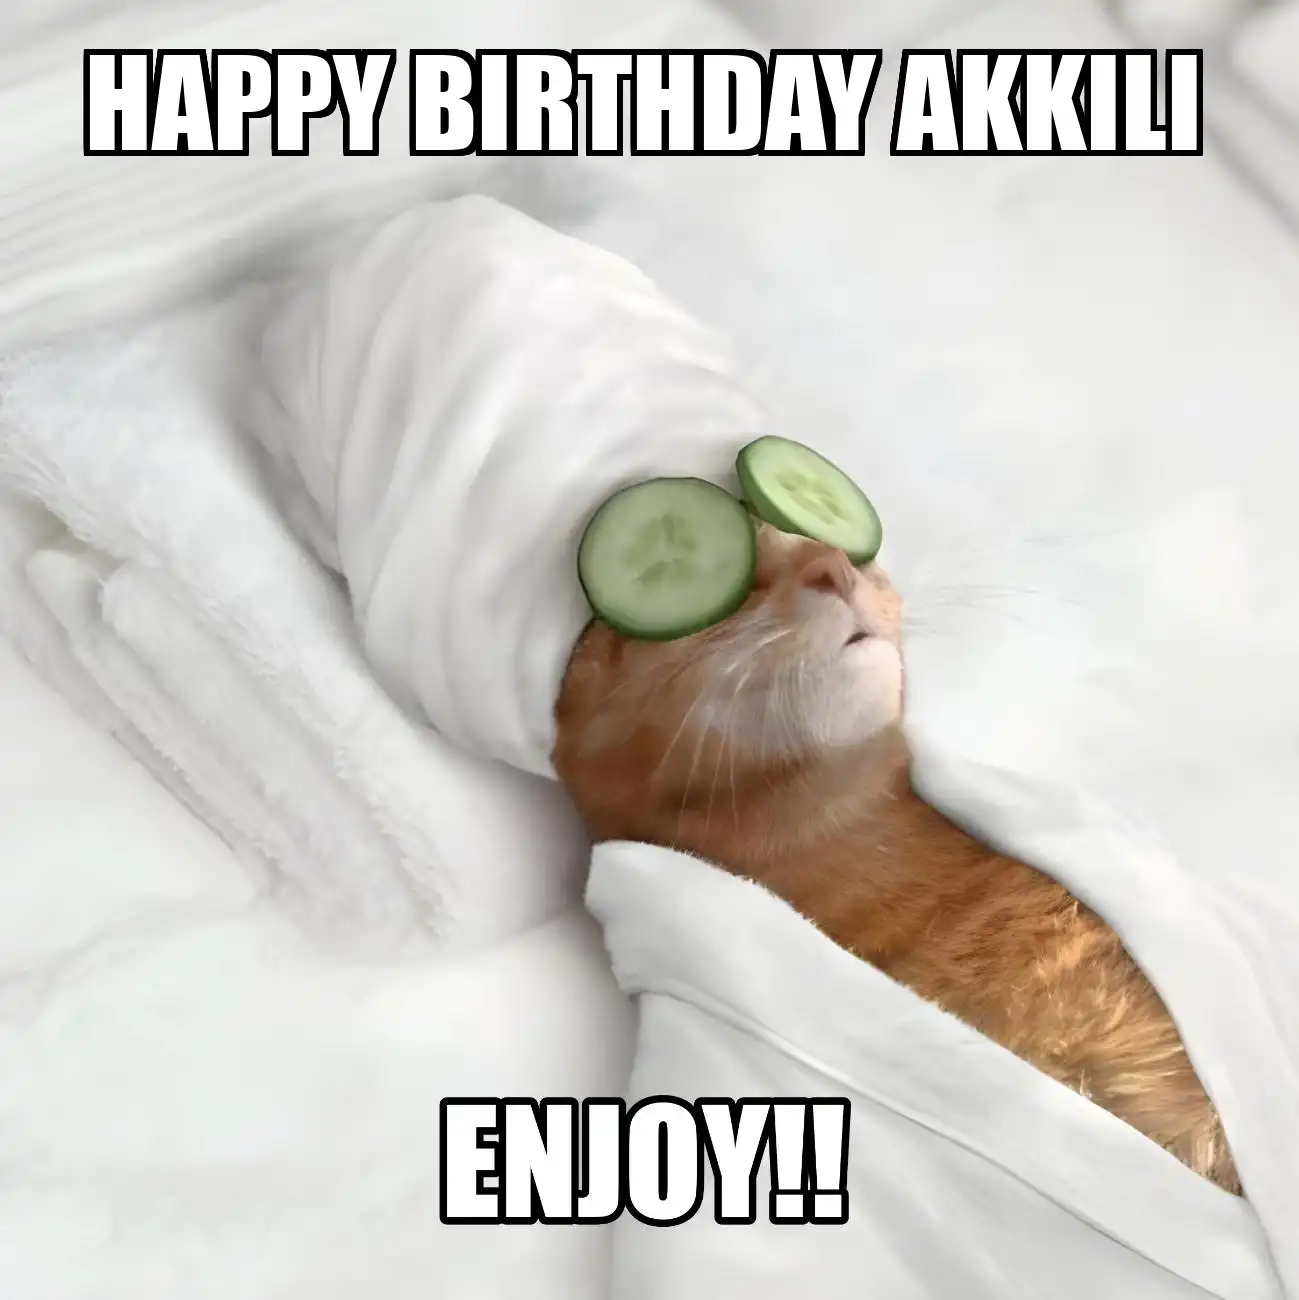 Happy Birthday Akkili Enjoy Cat Meme